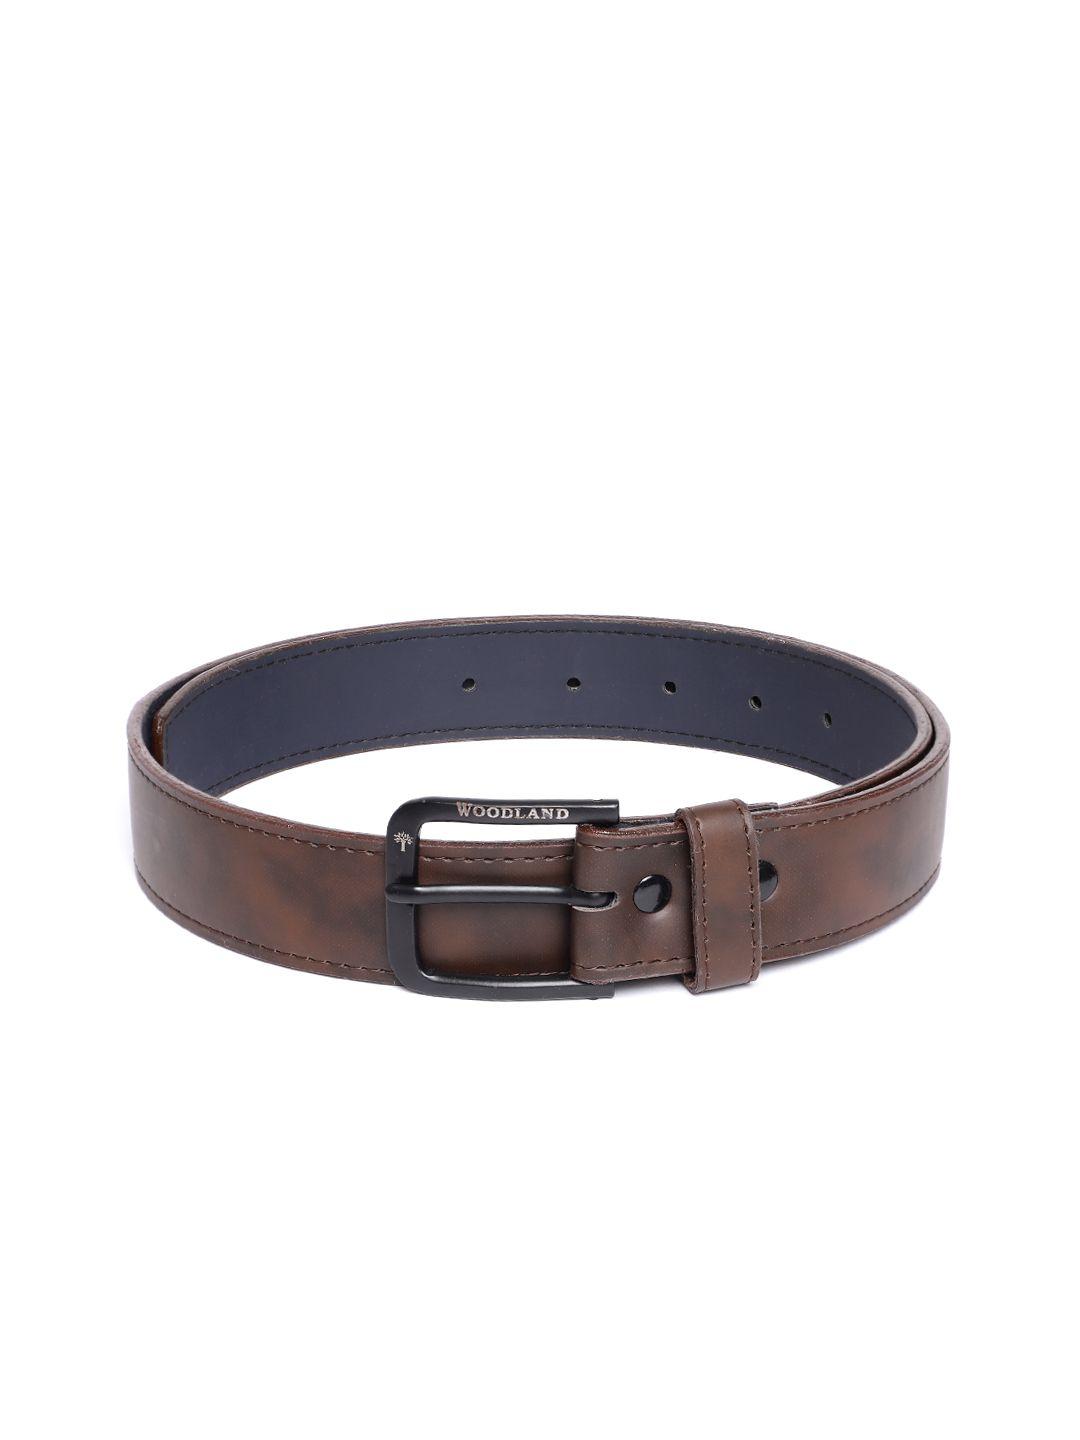 woodland men leather belt